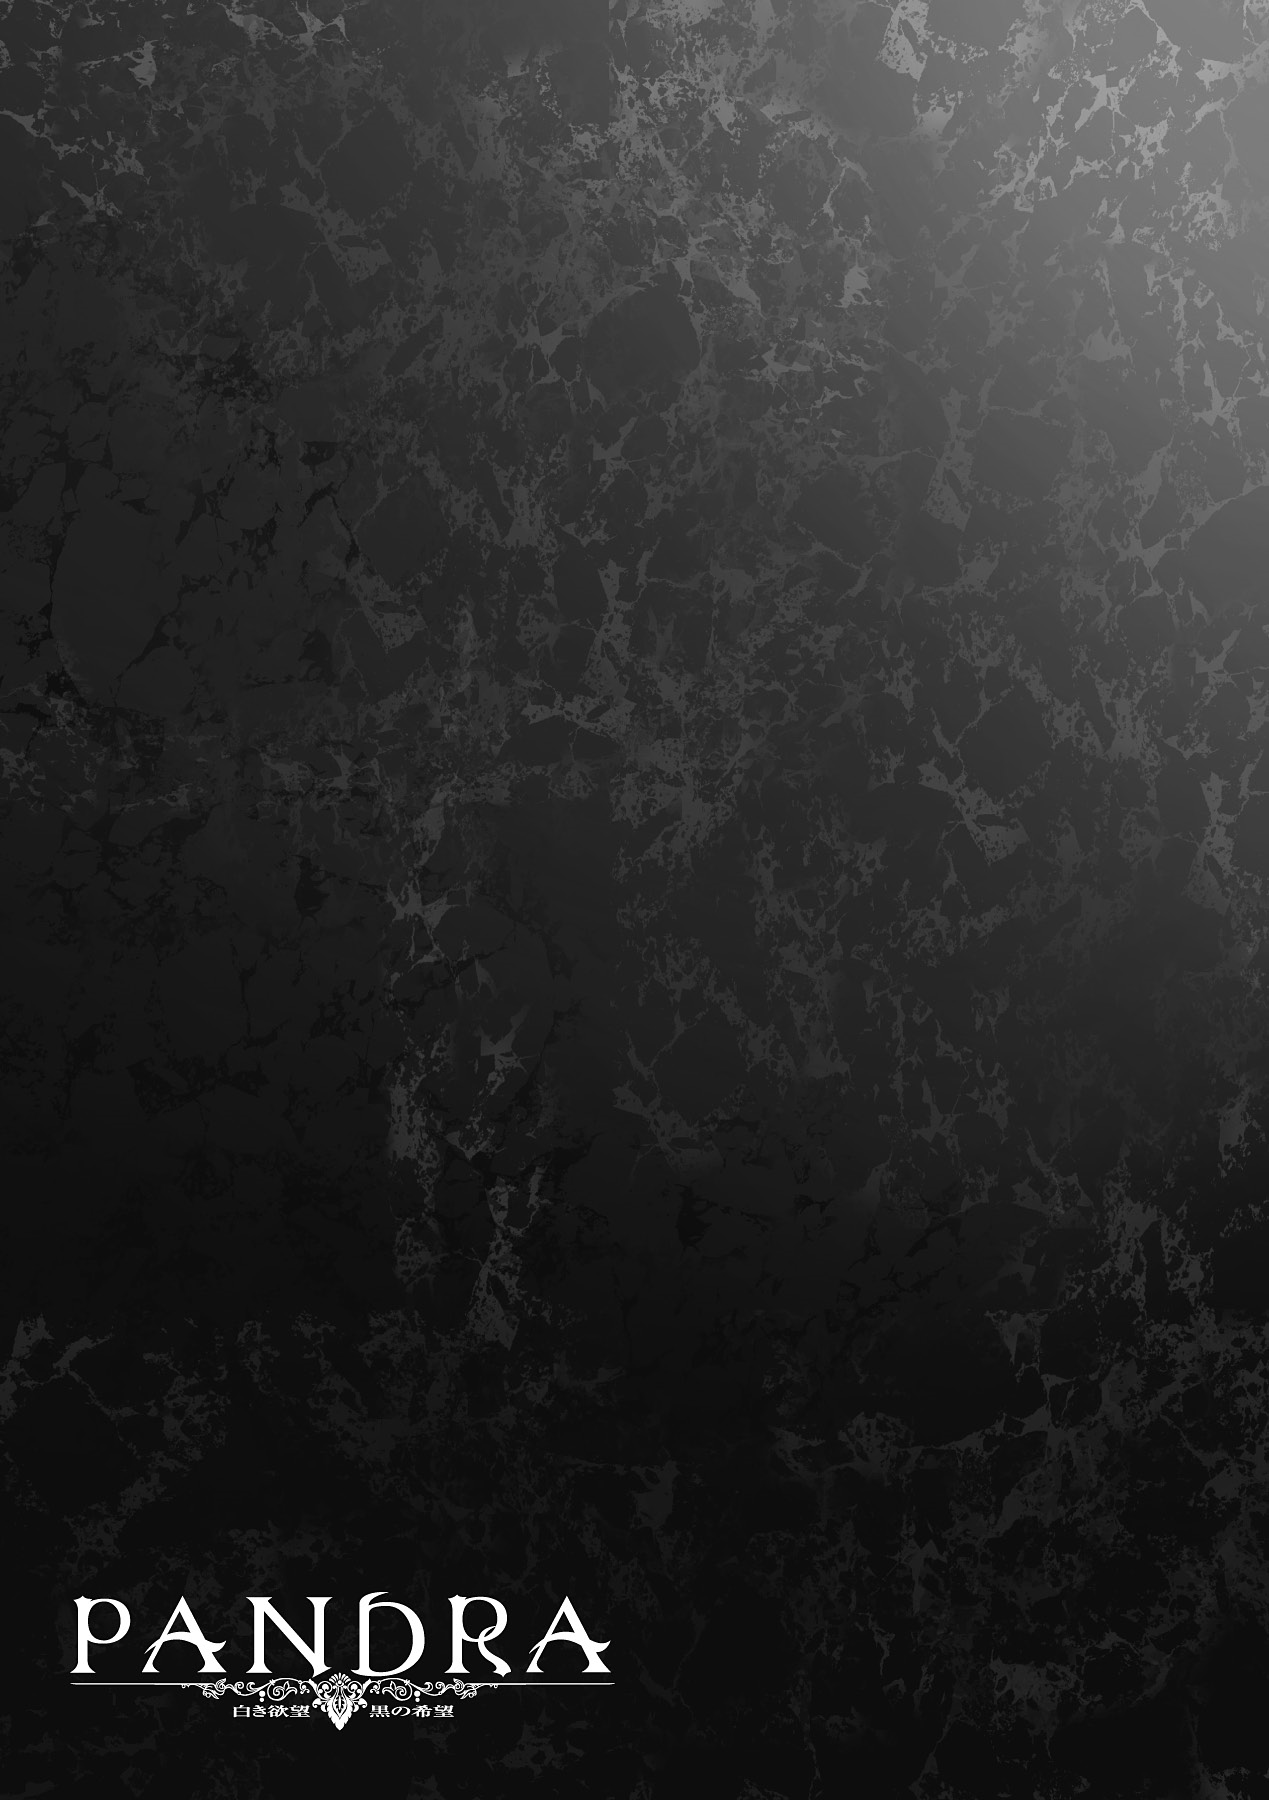 [エレクトさわる] PANDRA －白き欲望 黒の希望－Ⅱ [DL版]